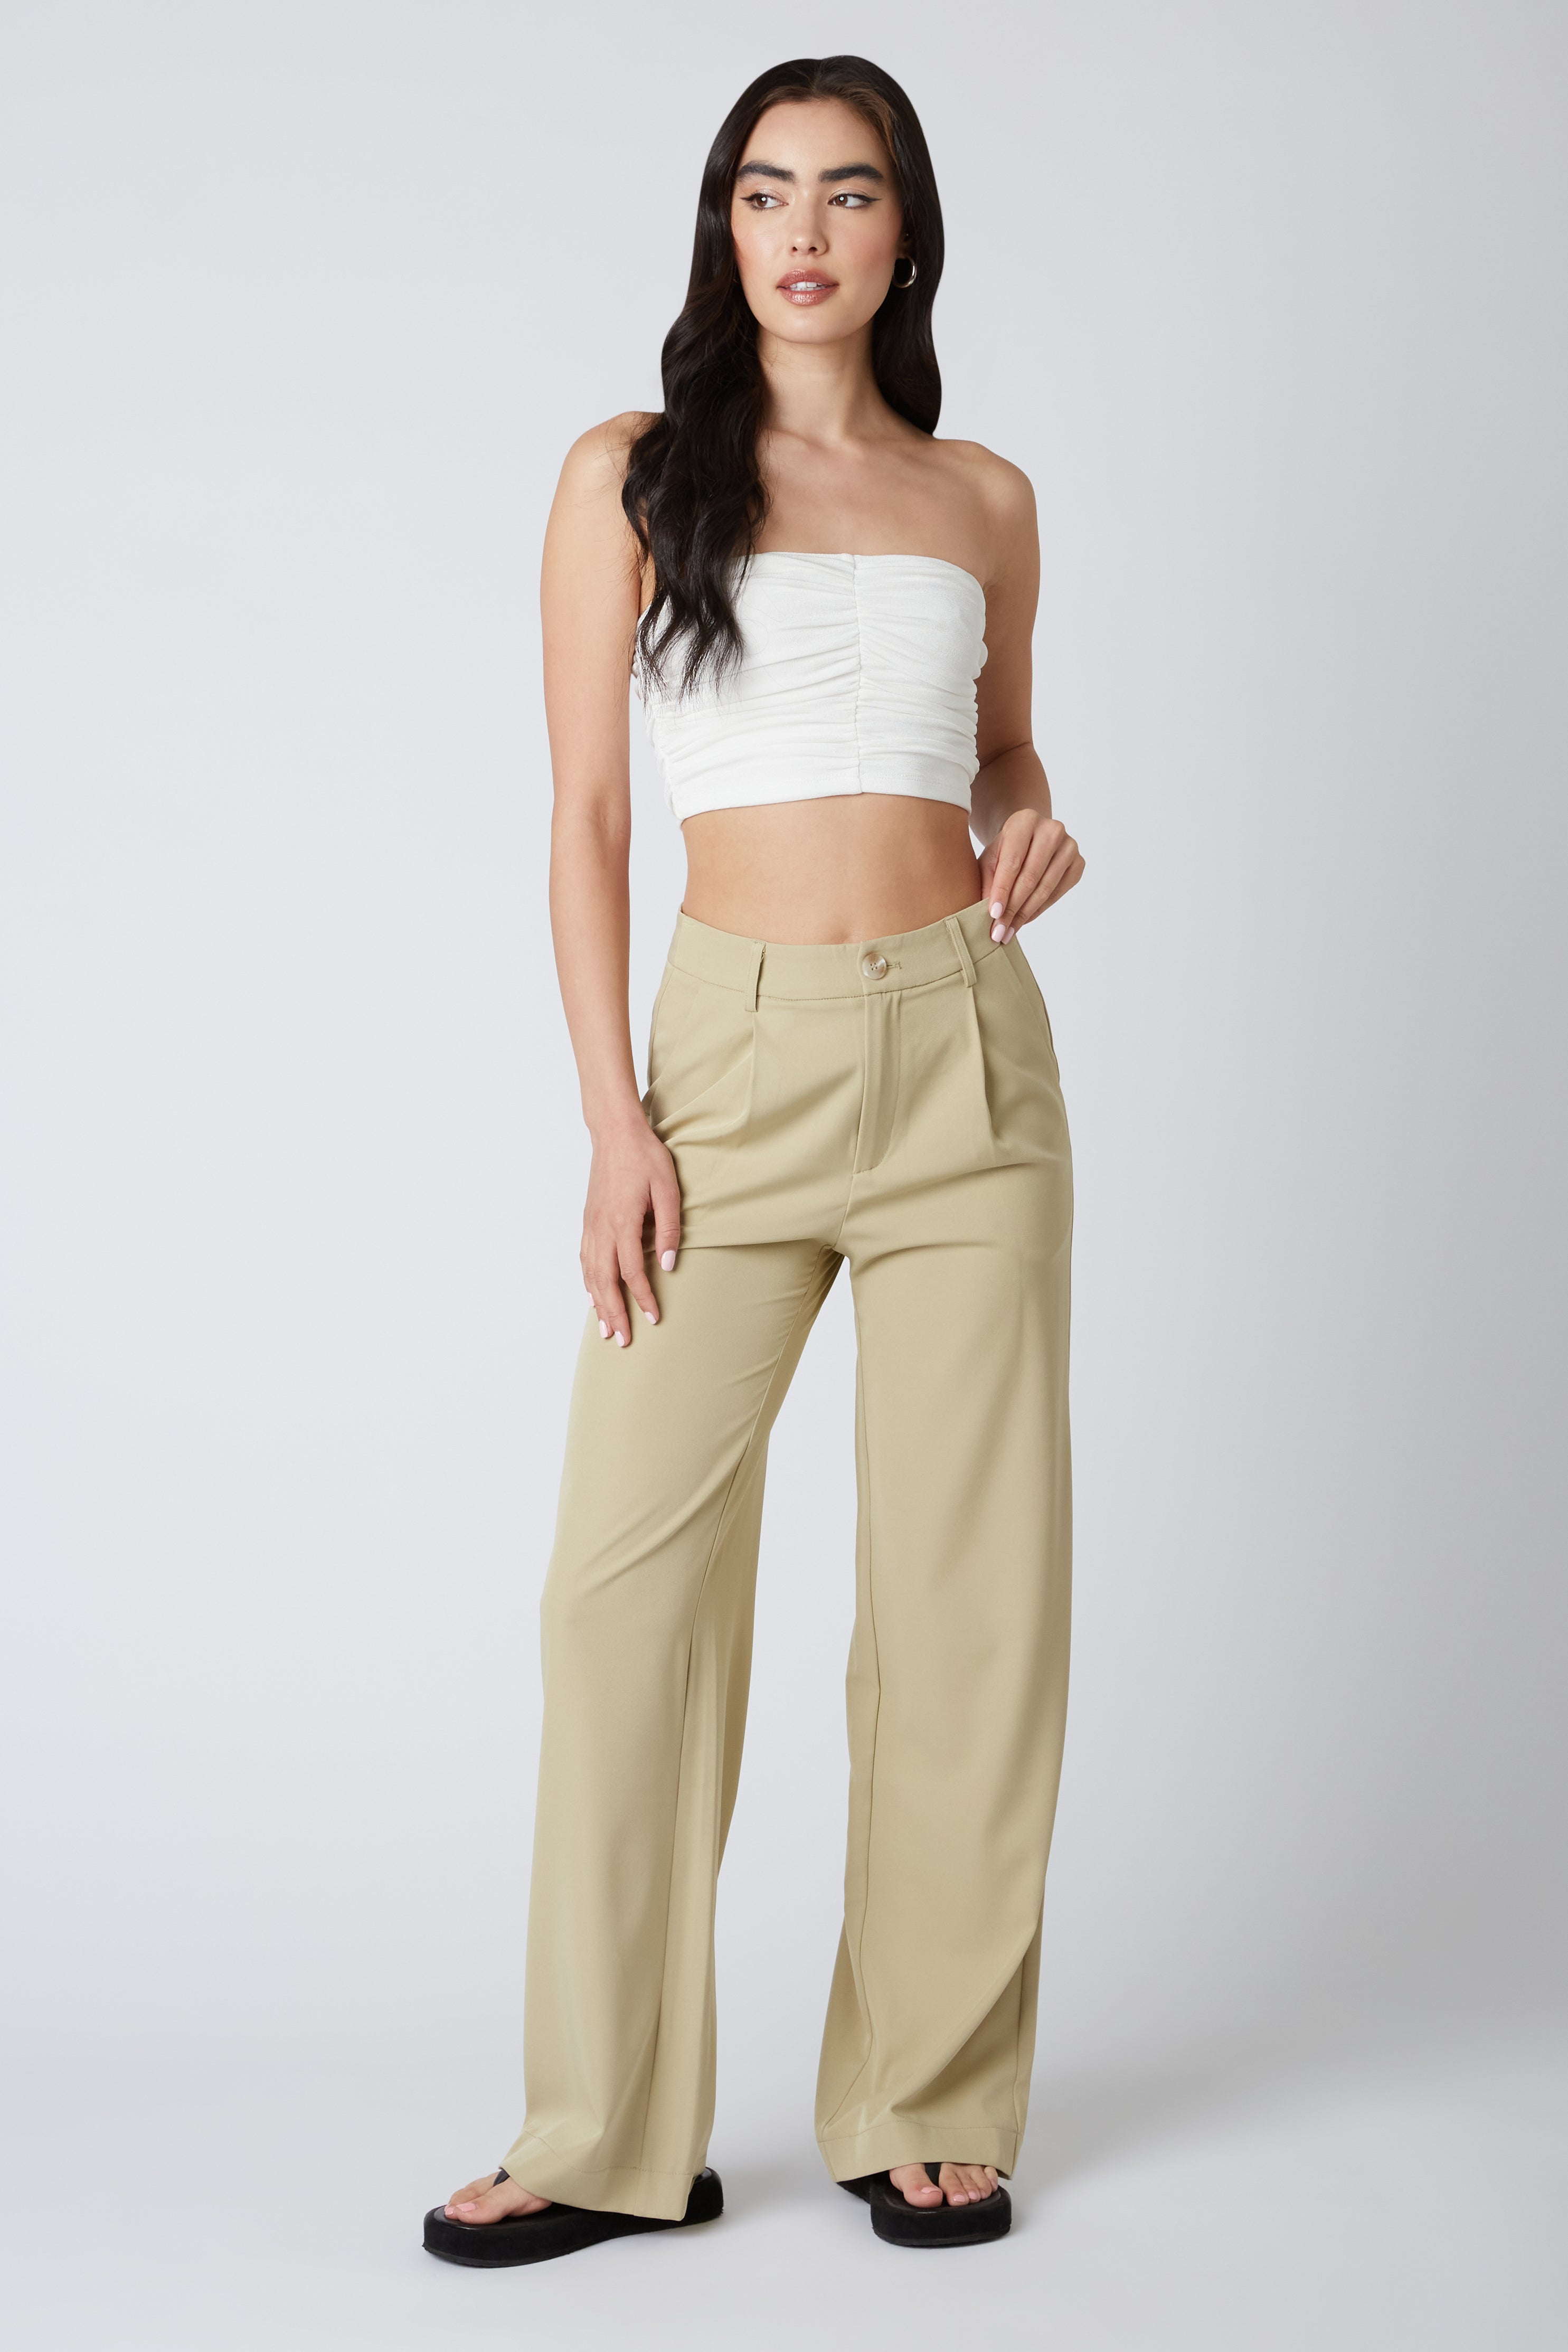 Buy Cotton Fleece High-Rise Gym Pants - Order Bottoms online 5000009313 -  Victoria's Secret US